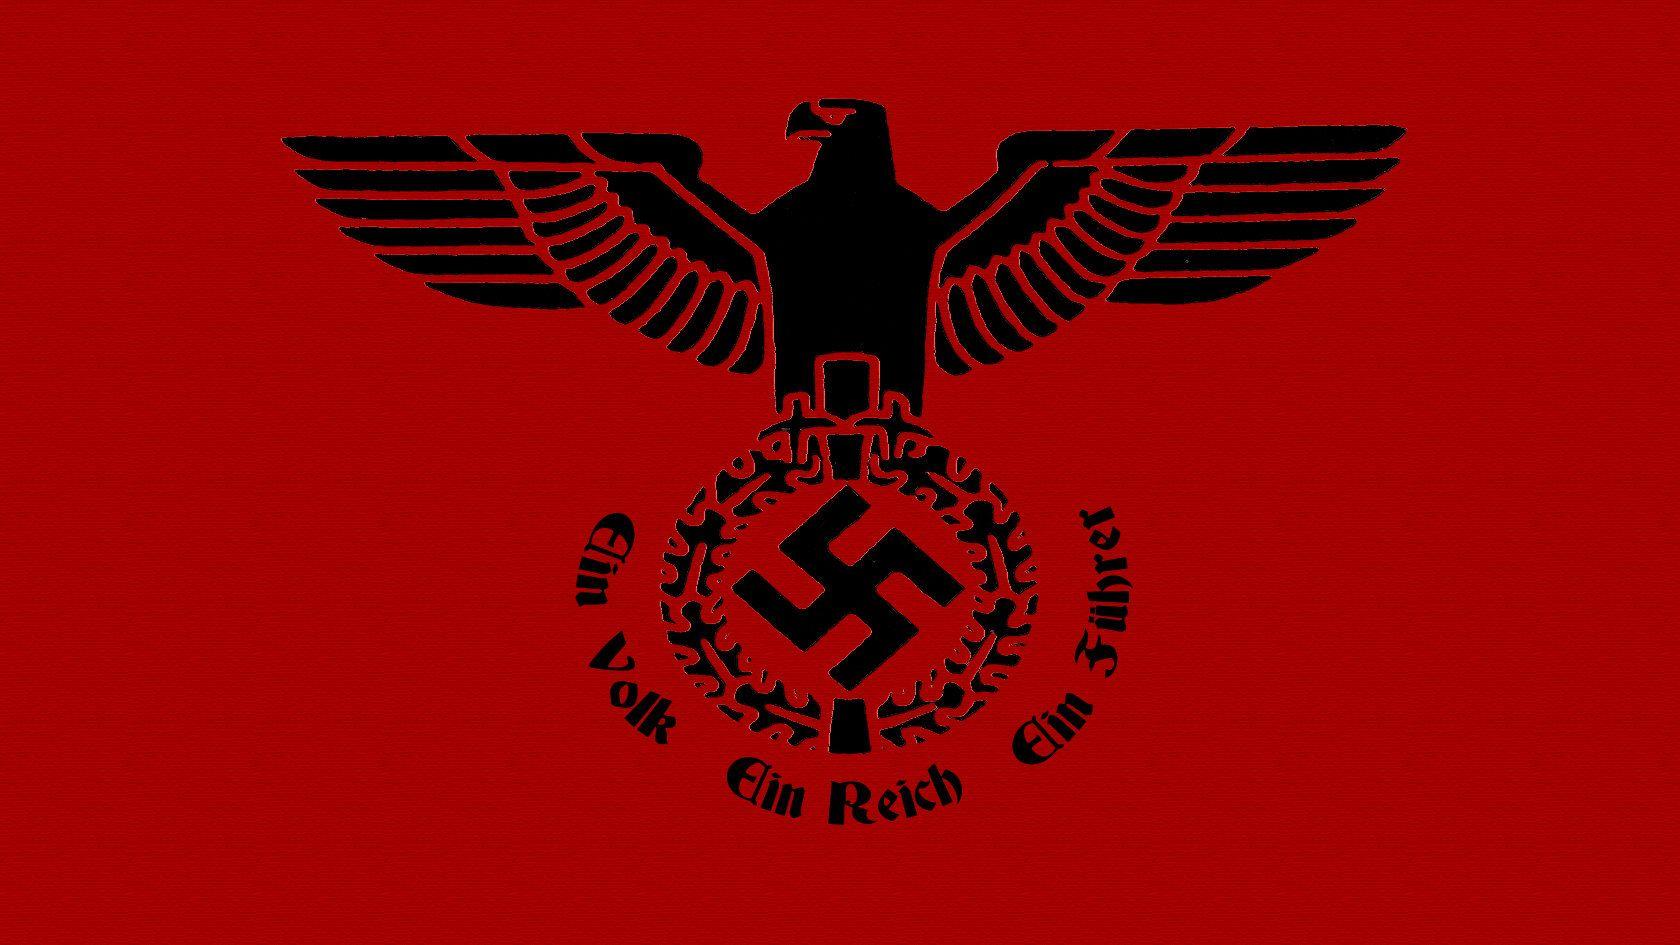 Nazi Ideology By The Panda Man